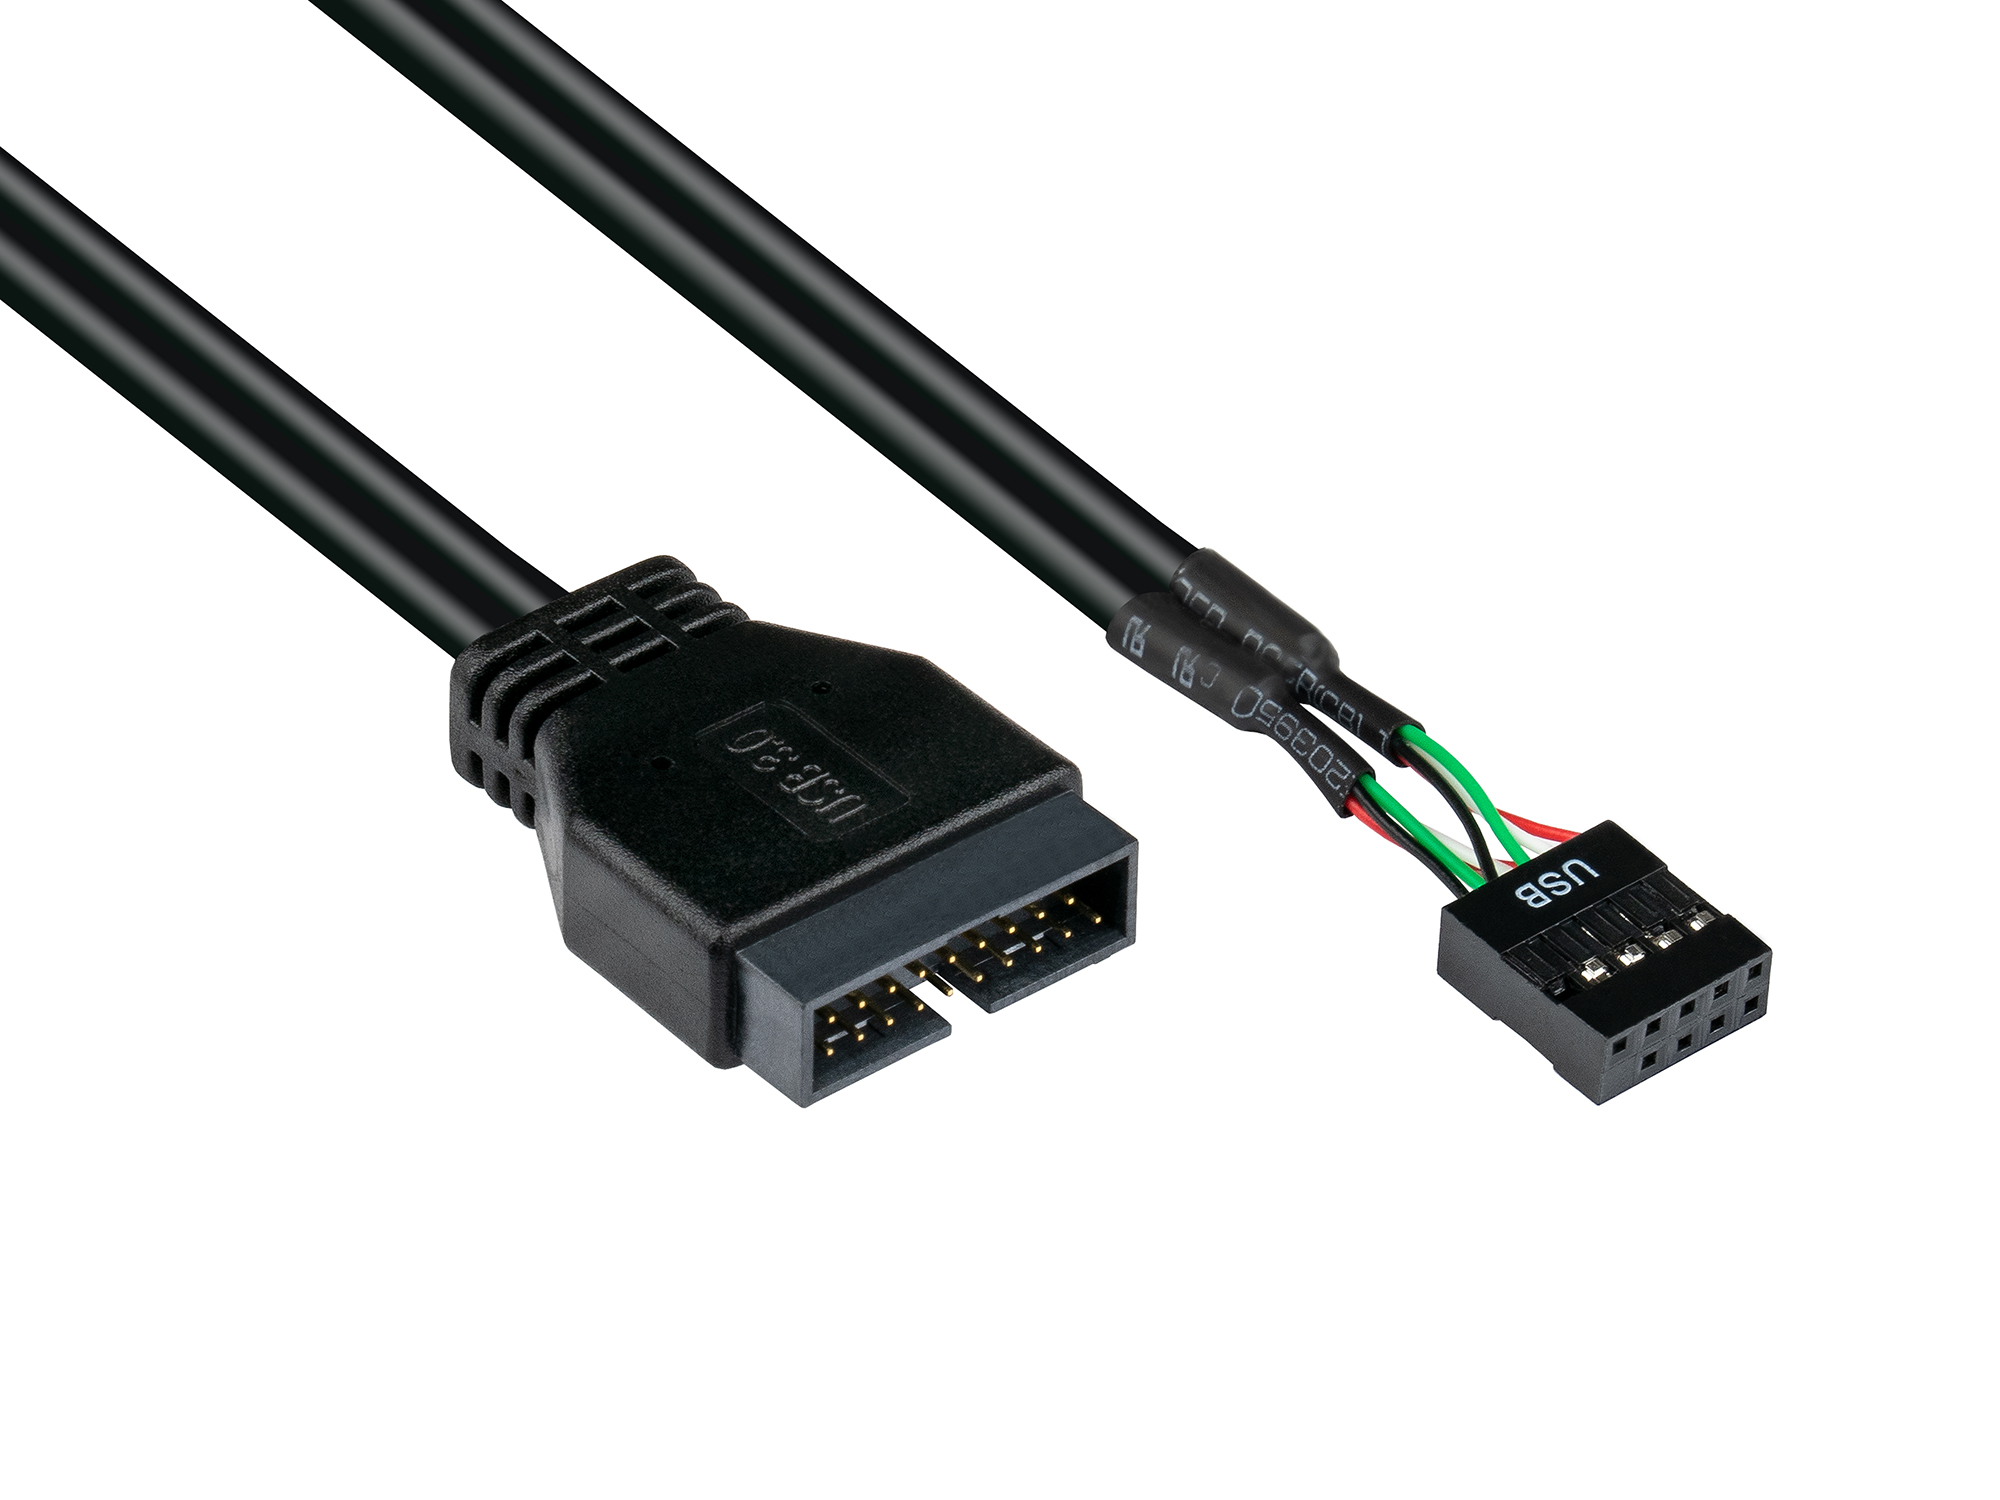 Adapter intern USB 3.0 Pin-Header Stecker an USB 2.0 Pin-Header Buchse, schwarz, 0,45m, Good Connect